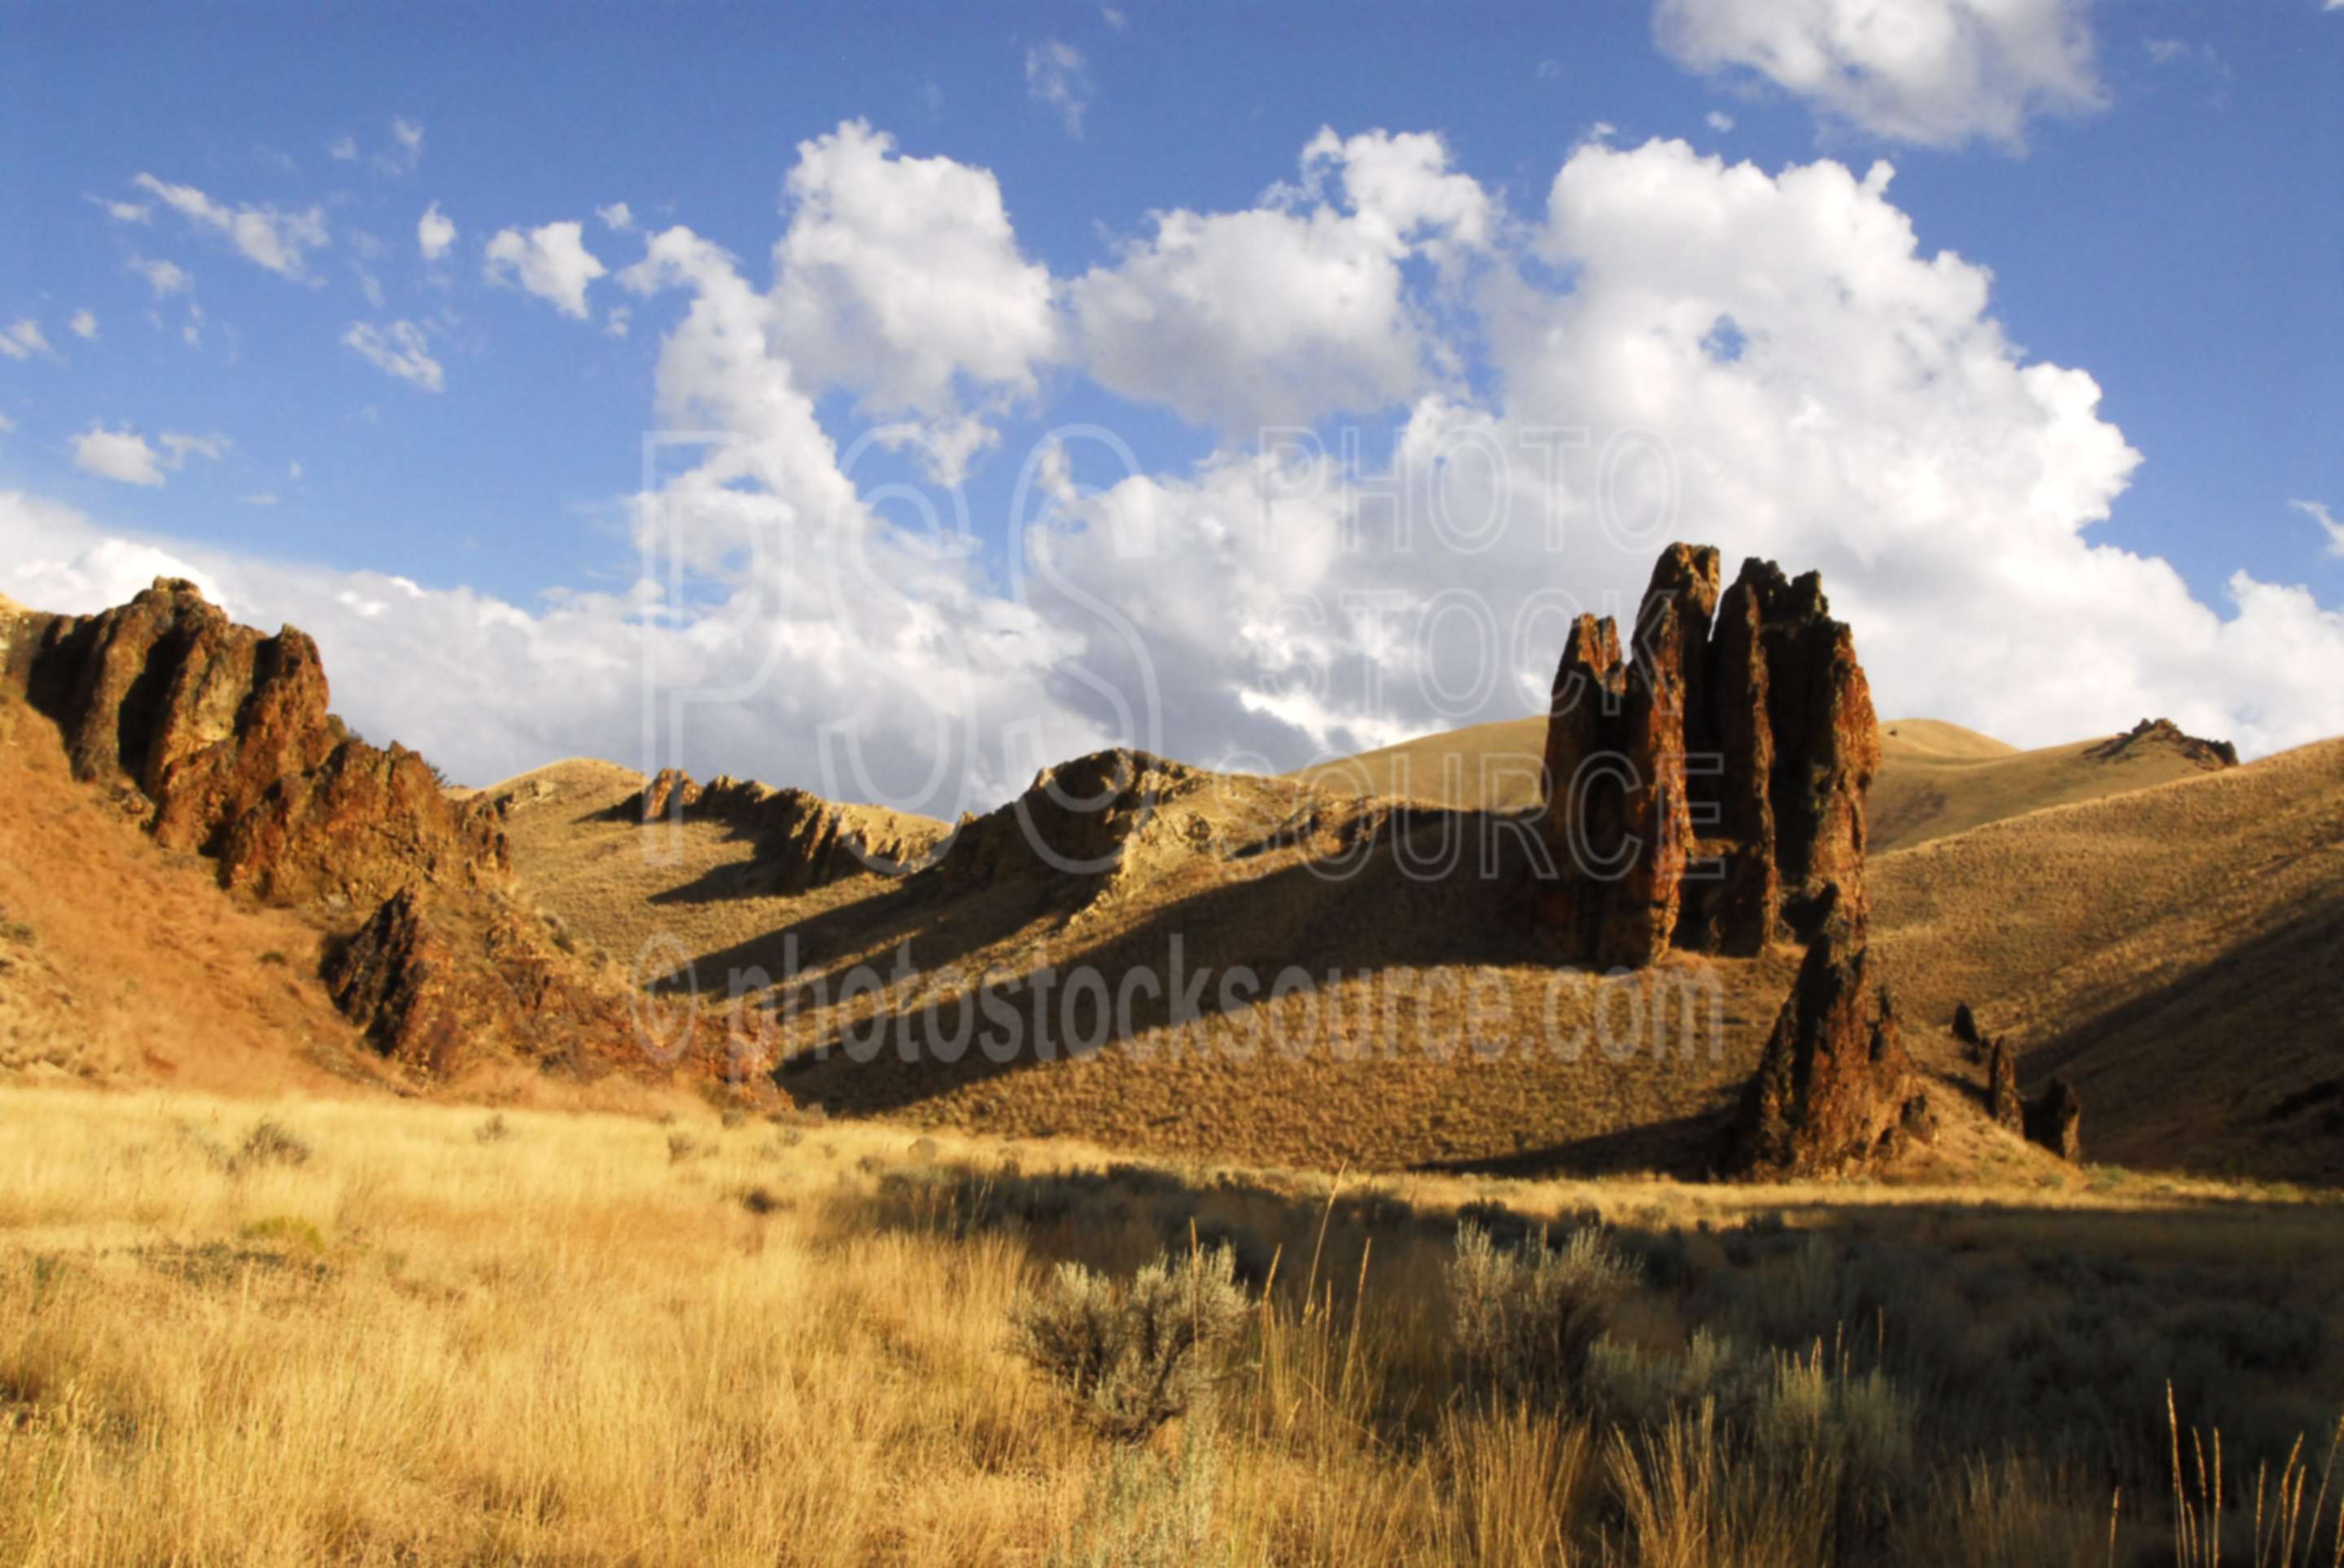 Slocum Creek Rocks,desert,gulch,valley,gorge,rocks,formations